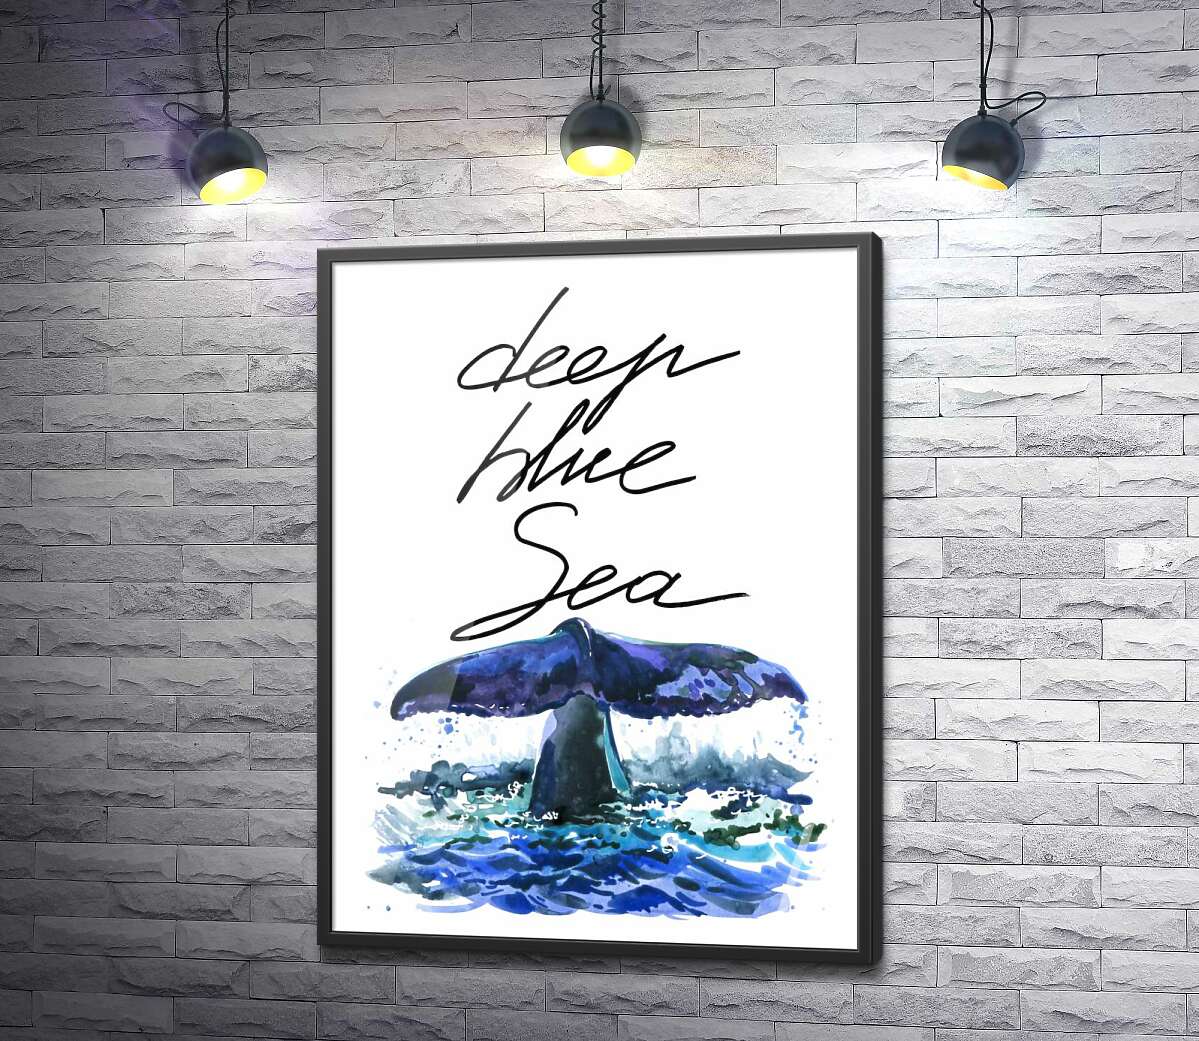 постер Хвіст кита над водною поверхнею поряд з написом "deep blue sea"